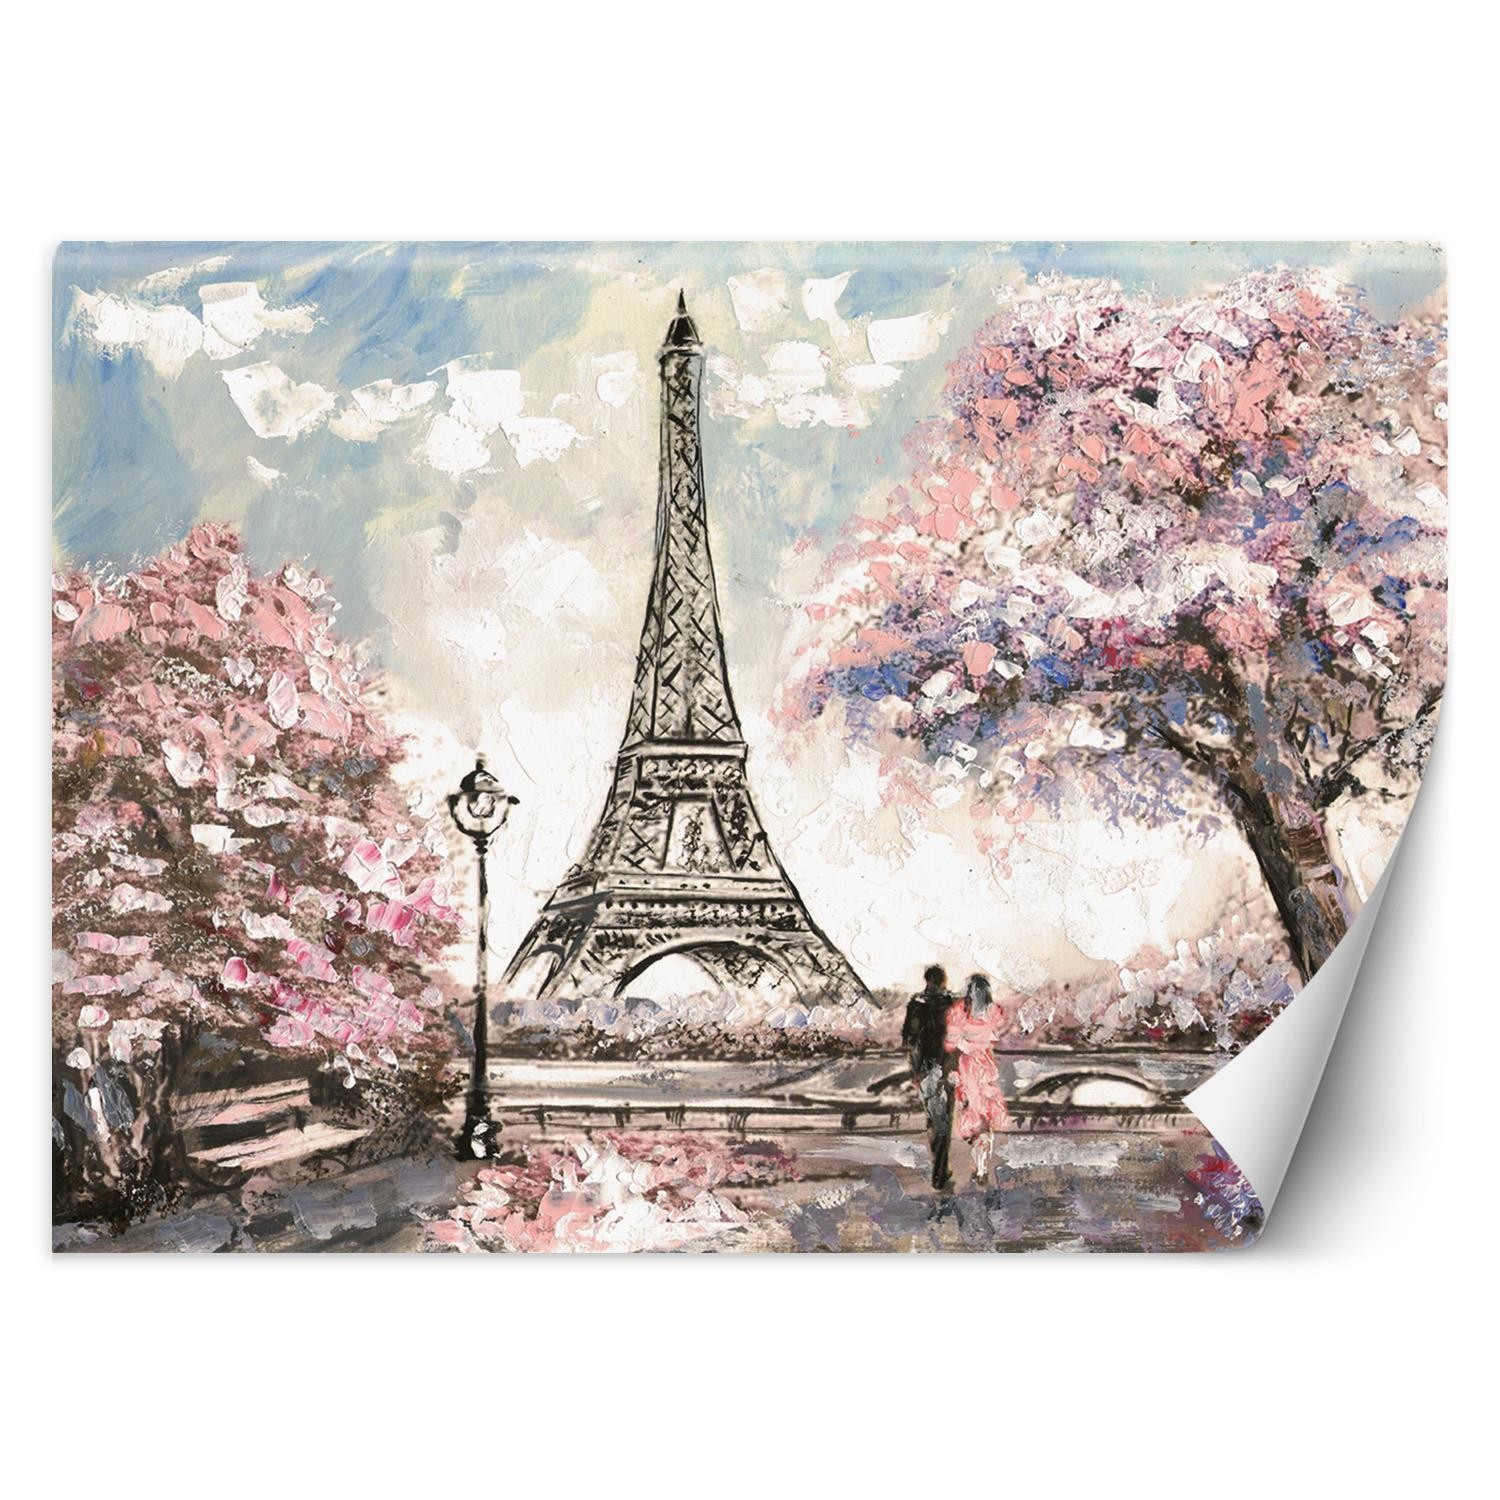 Trend24 – Behang – Parijs – Behangpapier – Fotobehang – Behang Woonkamer – 250x175x2 cm – Incl. behanglijm